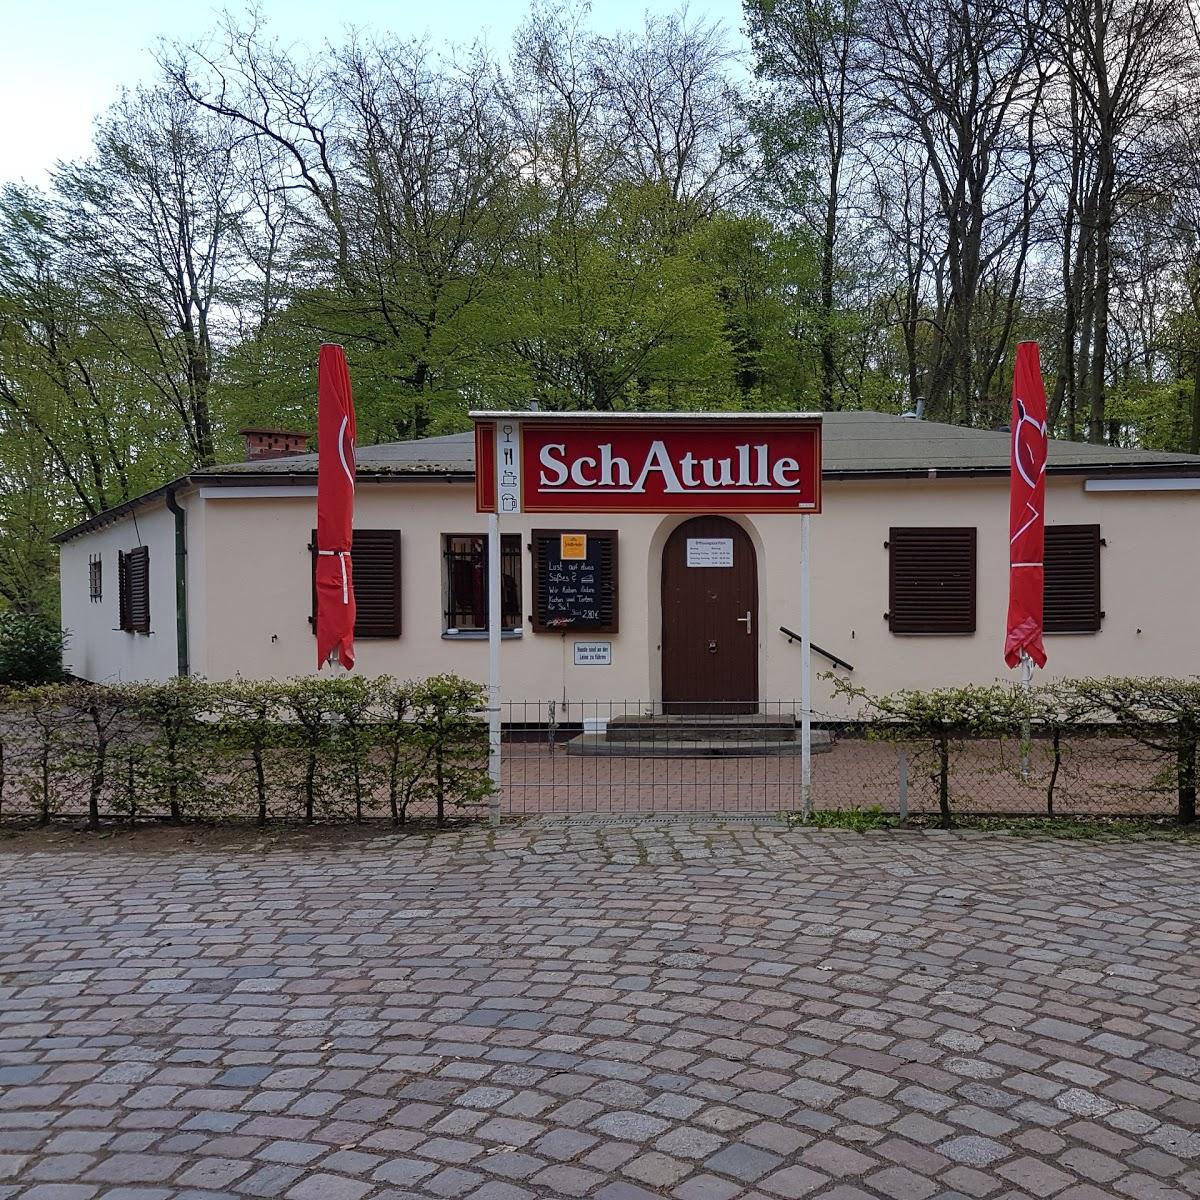 Restaurant "Schatulle" in Berlin